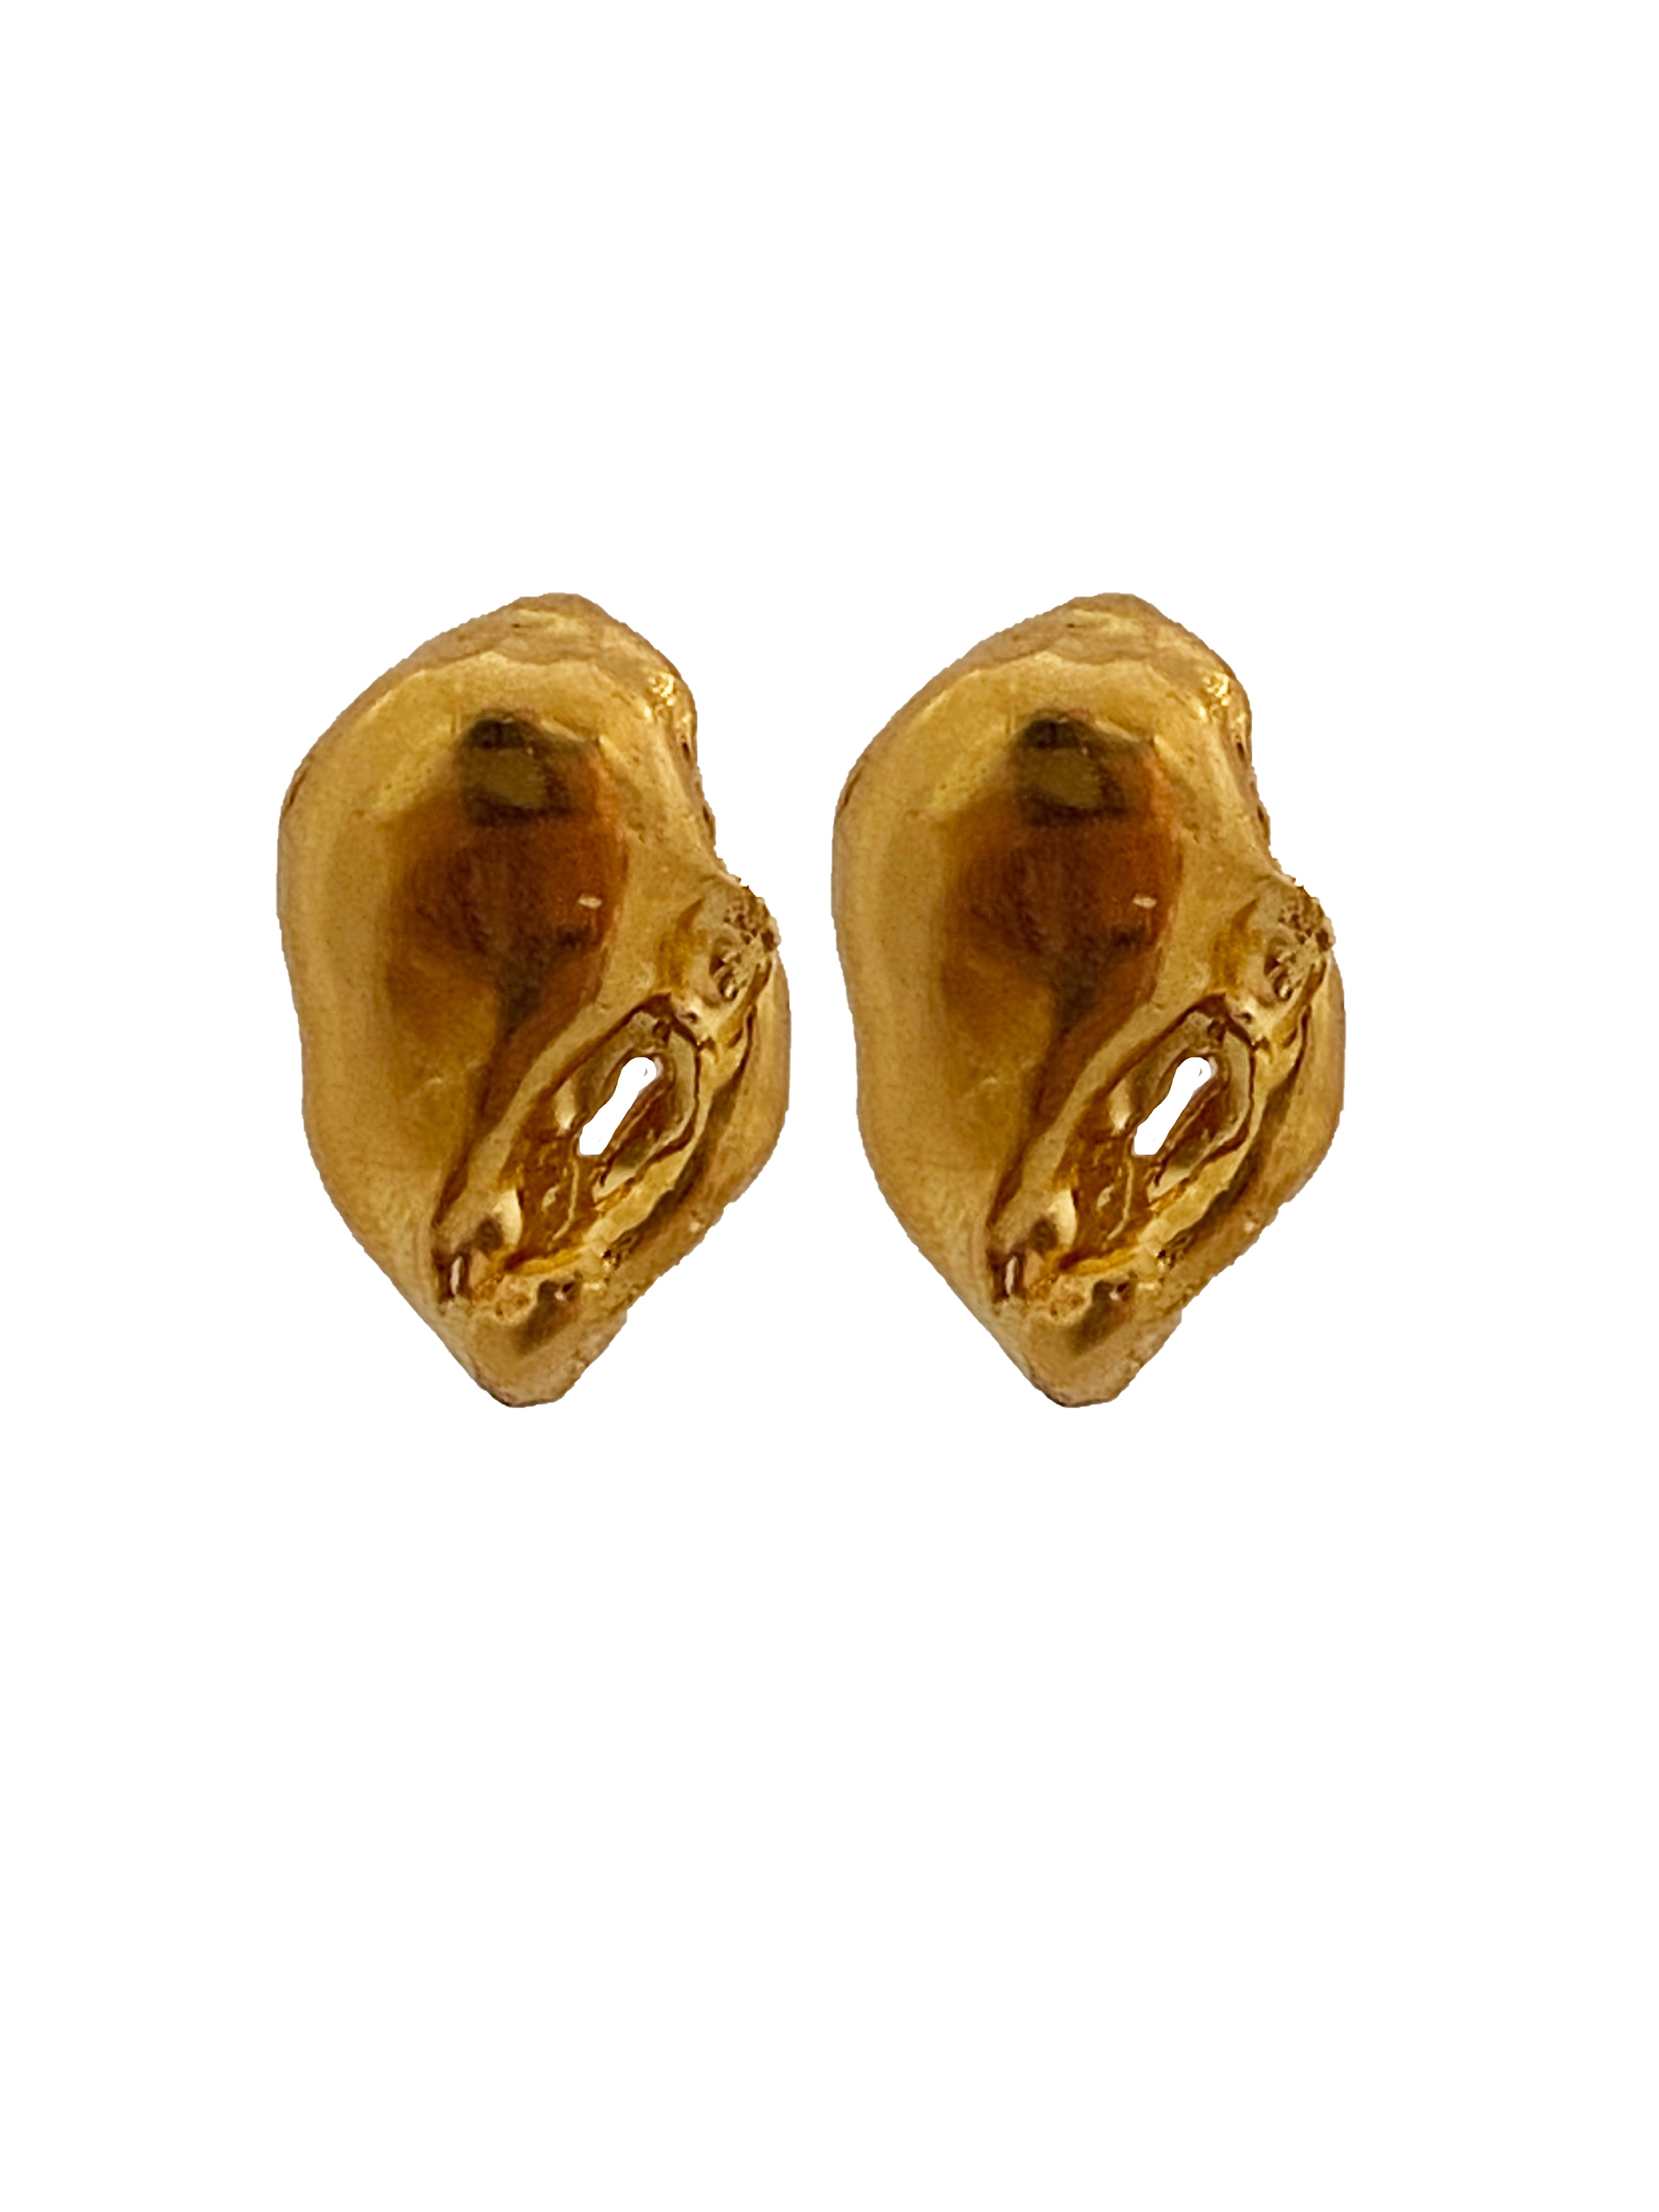 Mandorla earrings